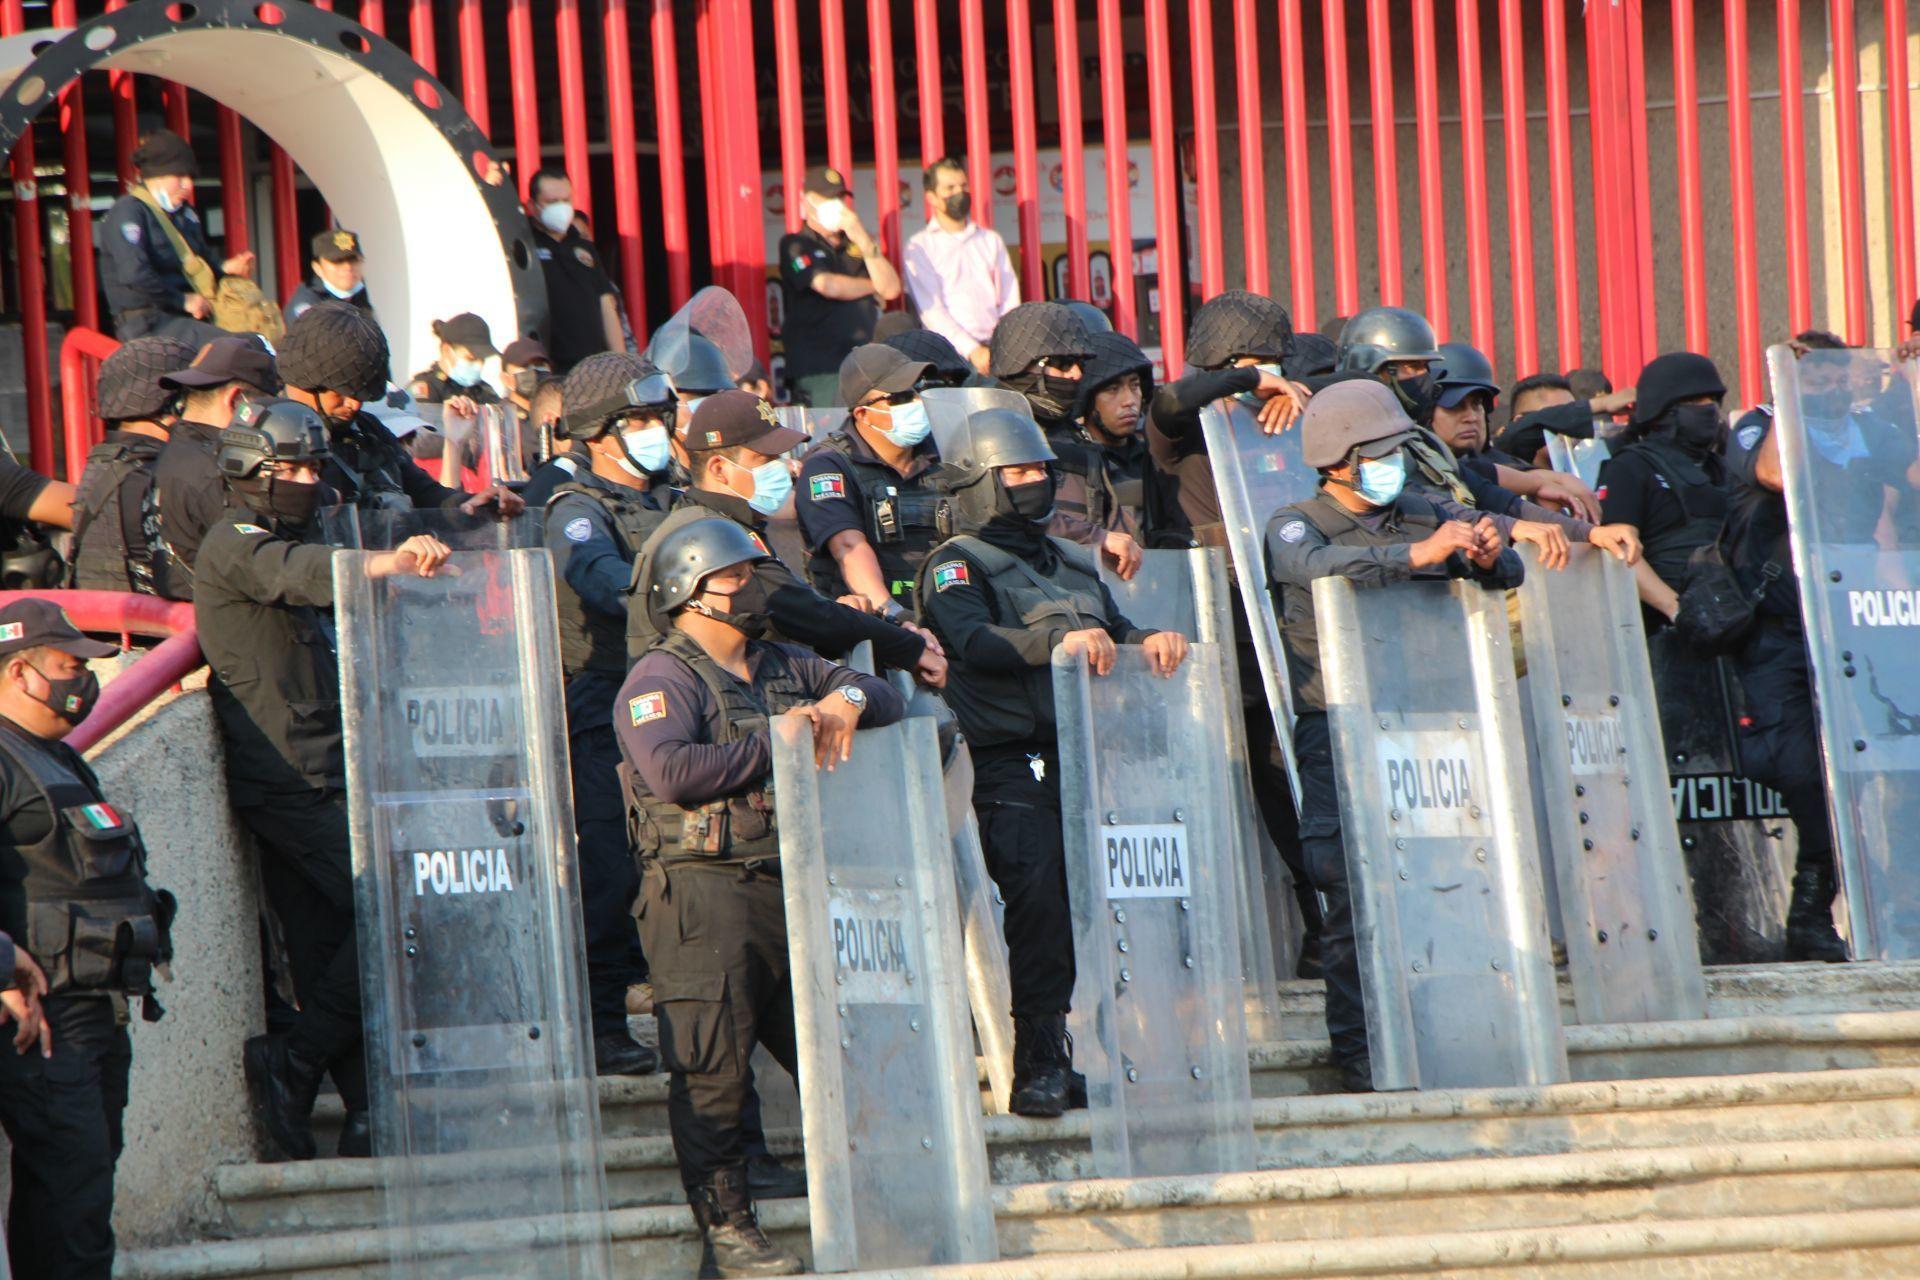 Policía poblana toma instalaciones de la UDLAP por conflicto legal; rector denuncia despojo